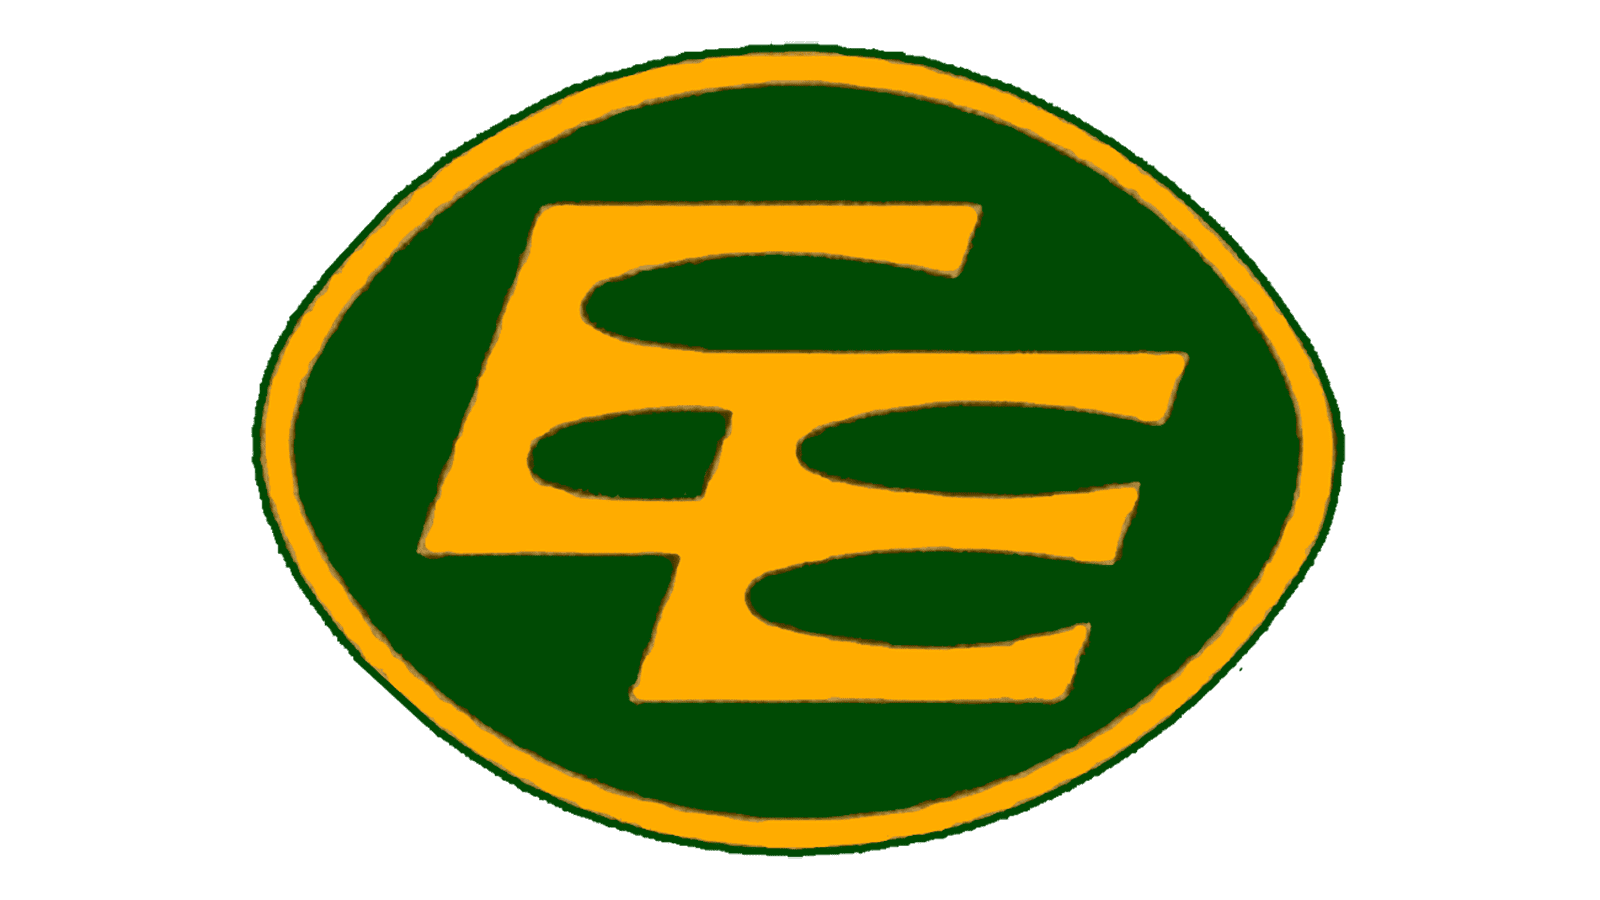 Edmonton Football Team adopts Elks as new name